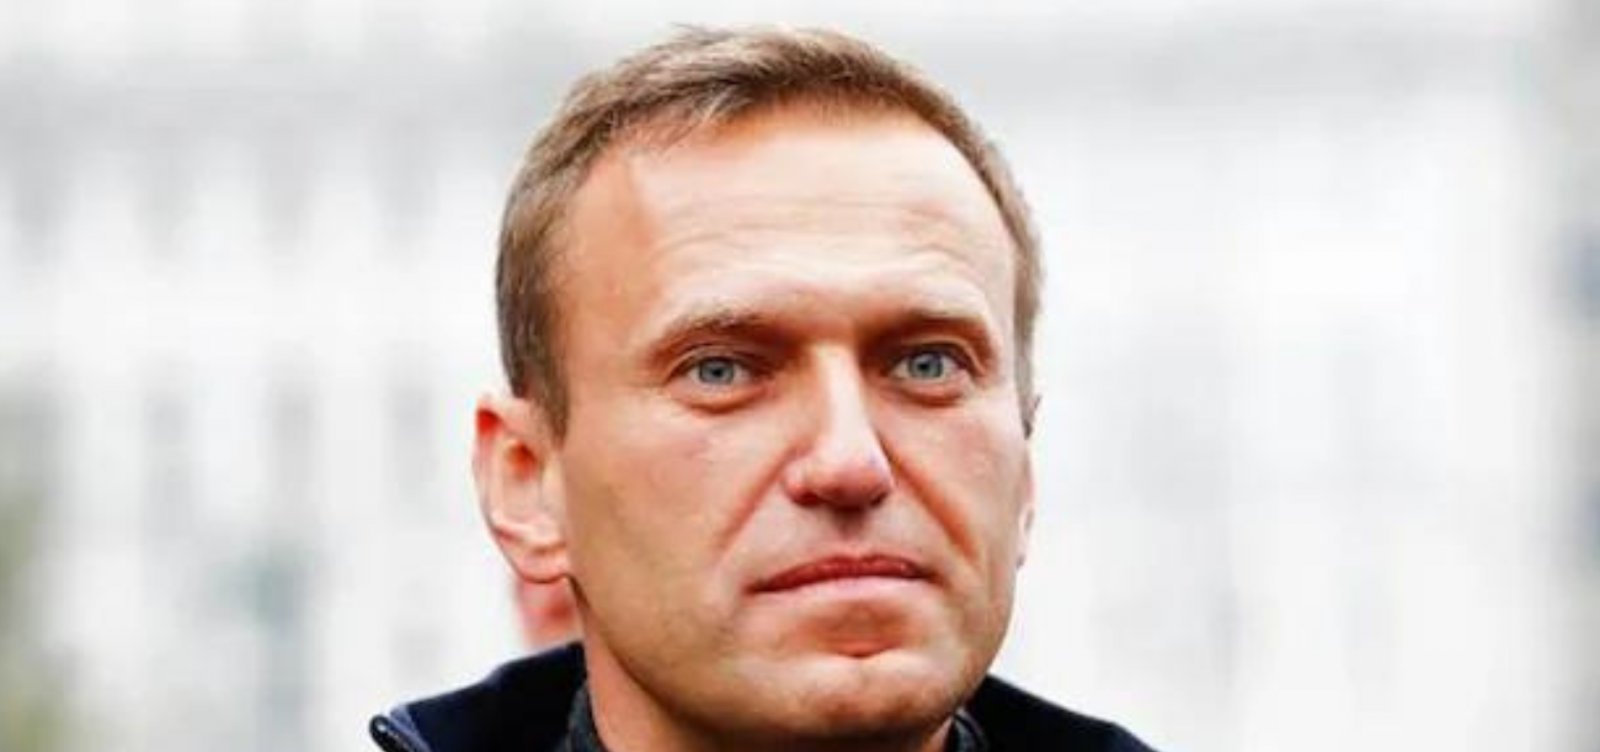 Mãe de Alexei Navalny é informada que filho teve “síndrome da morte súbita”